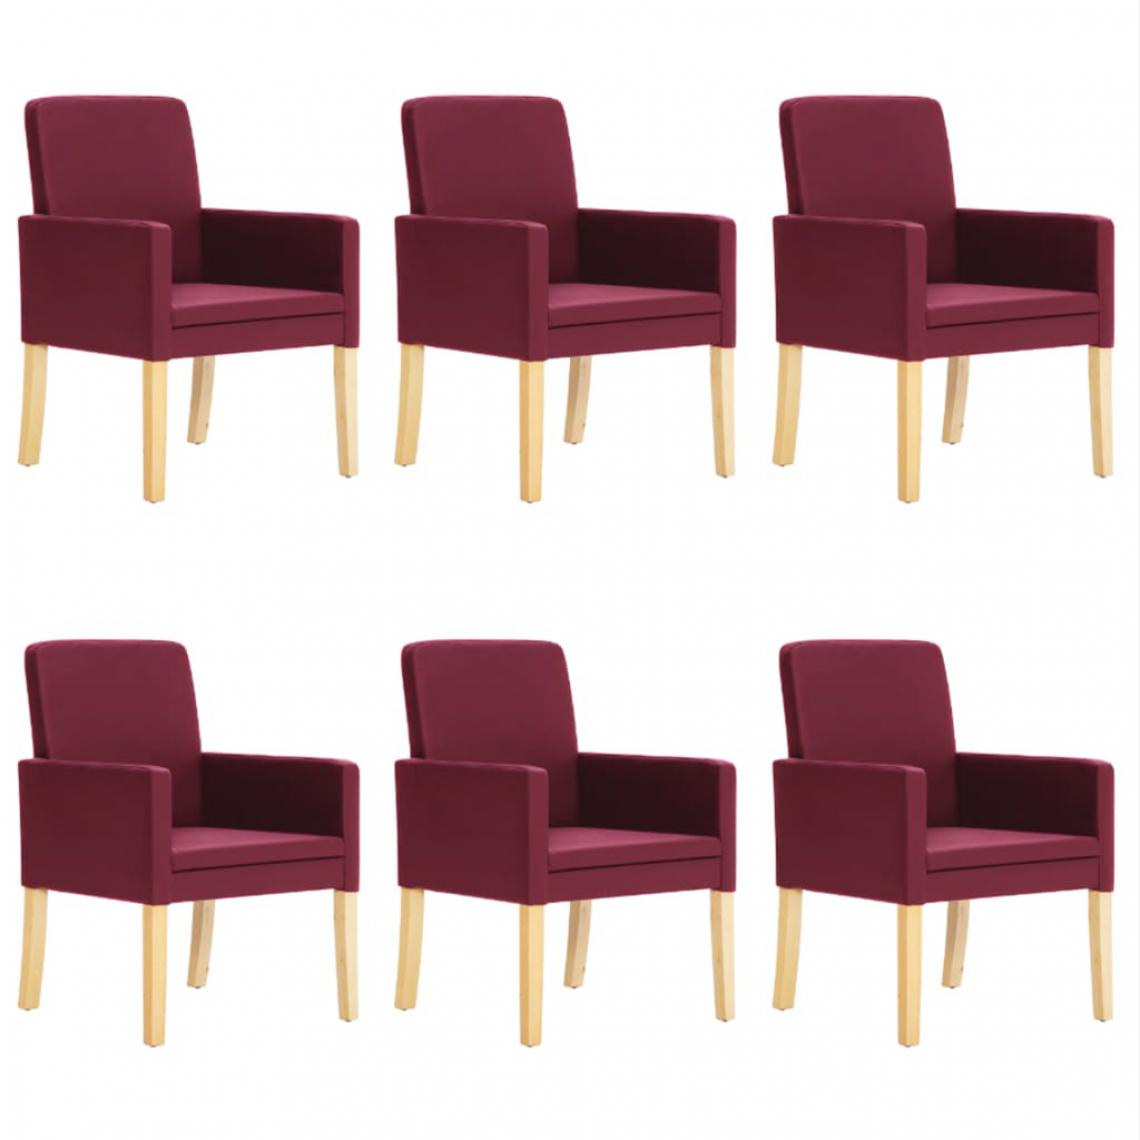 Chunhelife - Chunhelife Chaises de salle à manger 6 pcs Rouge bordeaux Similicuir - Chaises